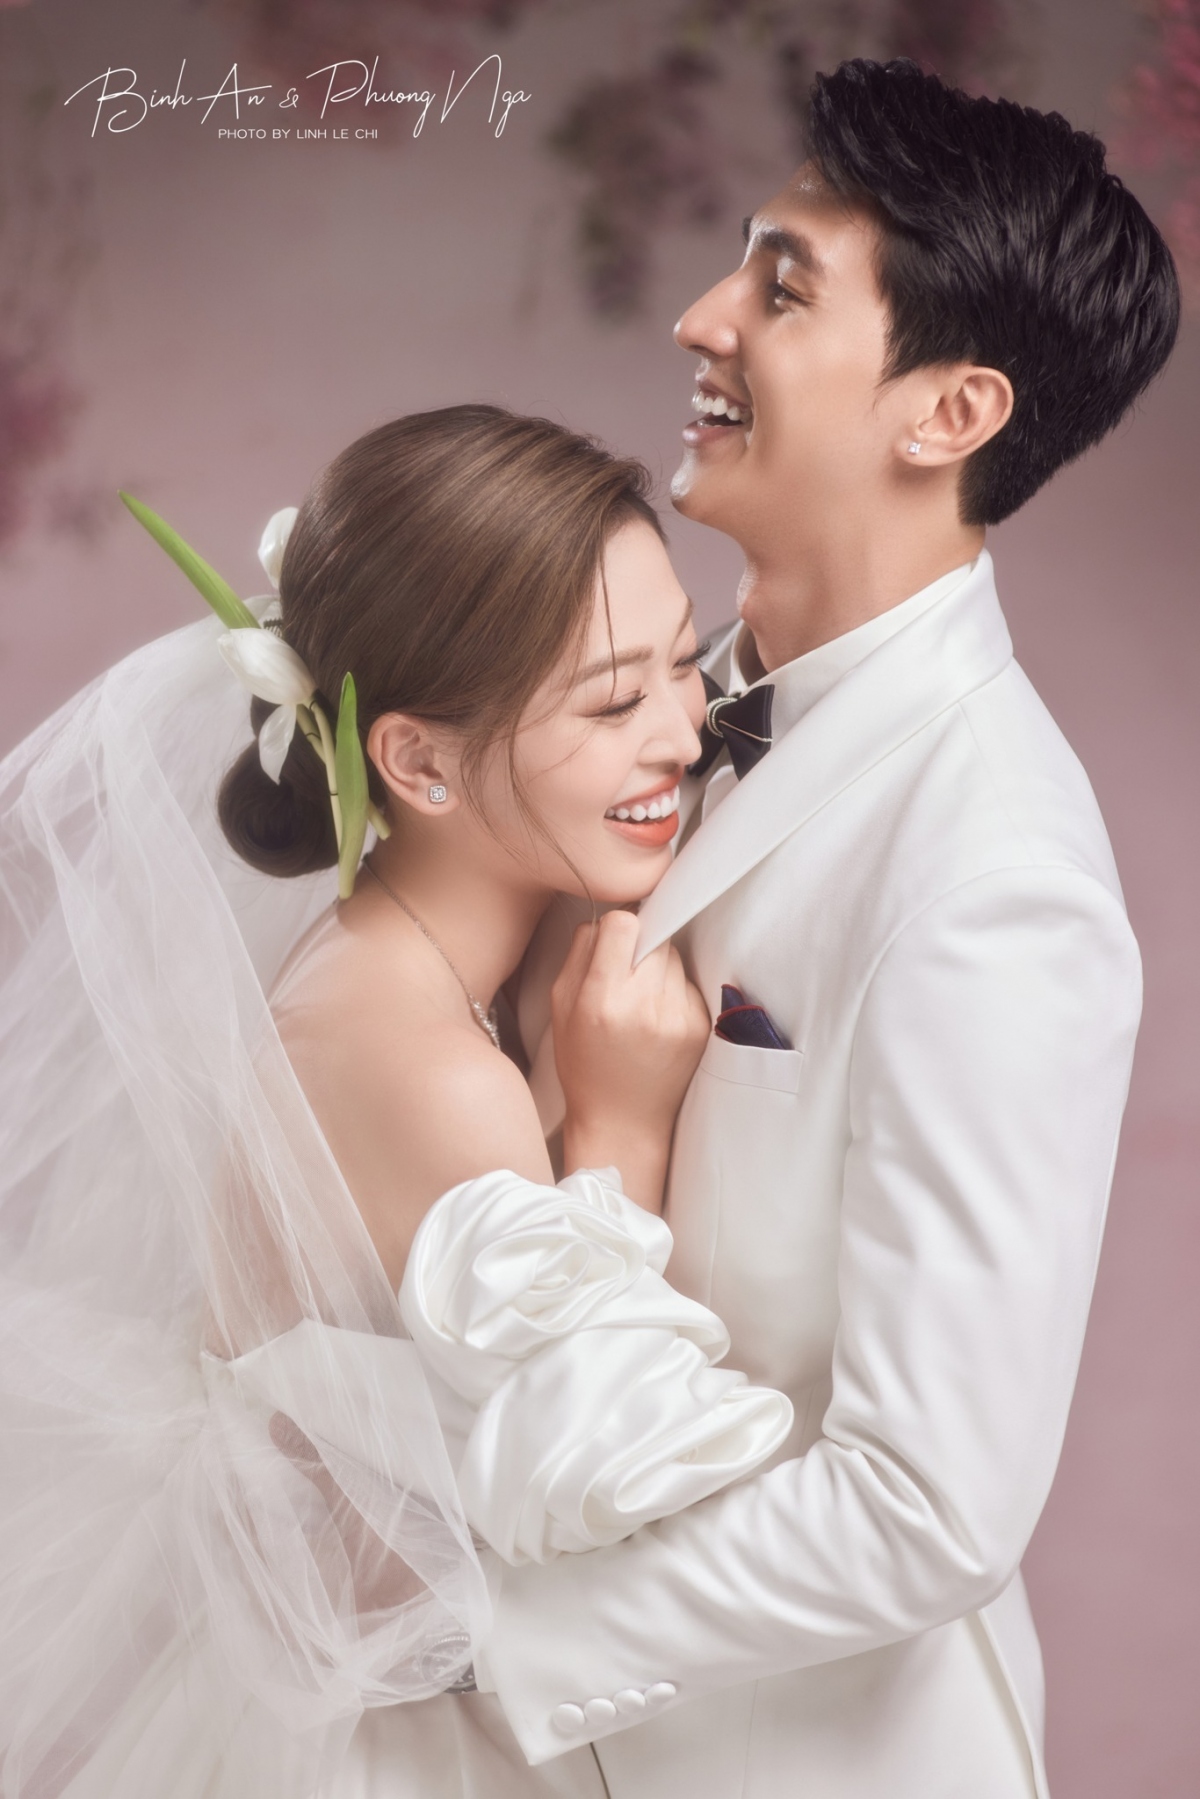 Phong cảnh trong bức ảnh cưới đẹp như tranh Hàn Quốc sẽ làm xao xuyến trái tim của bạn. Hãy cùng khám phá những bức ảnh cưới độc đáo mang phong cách Hàn Quốc.